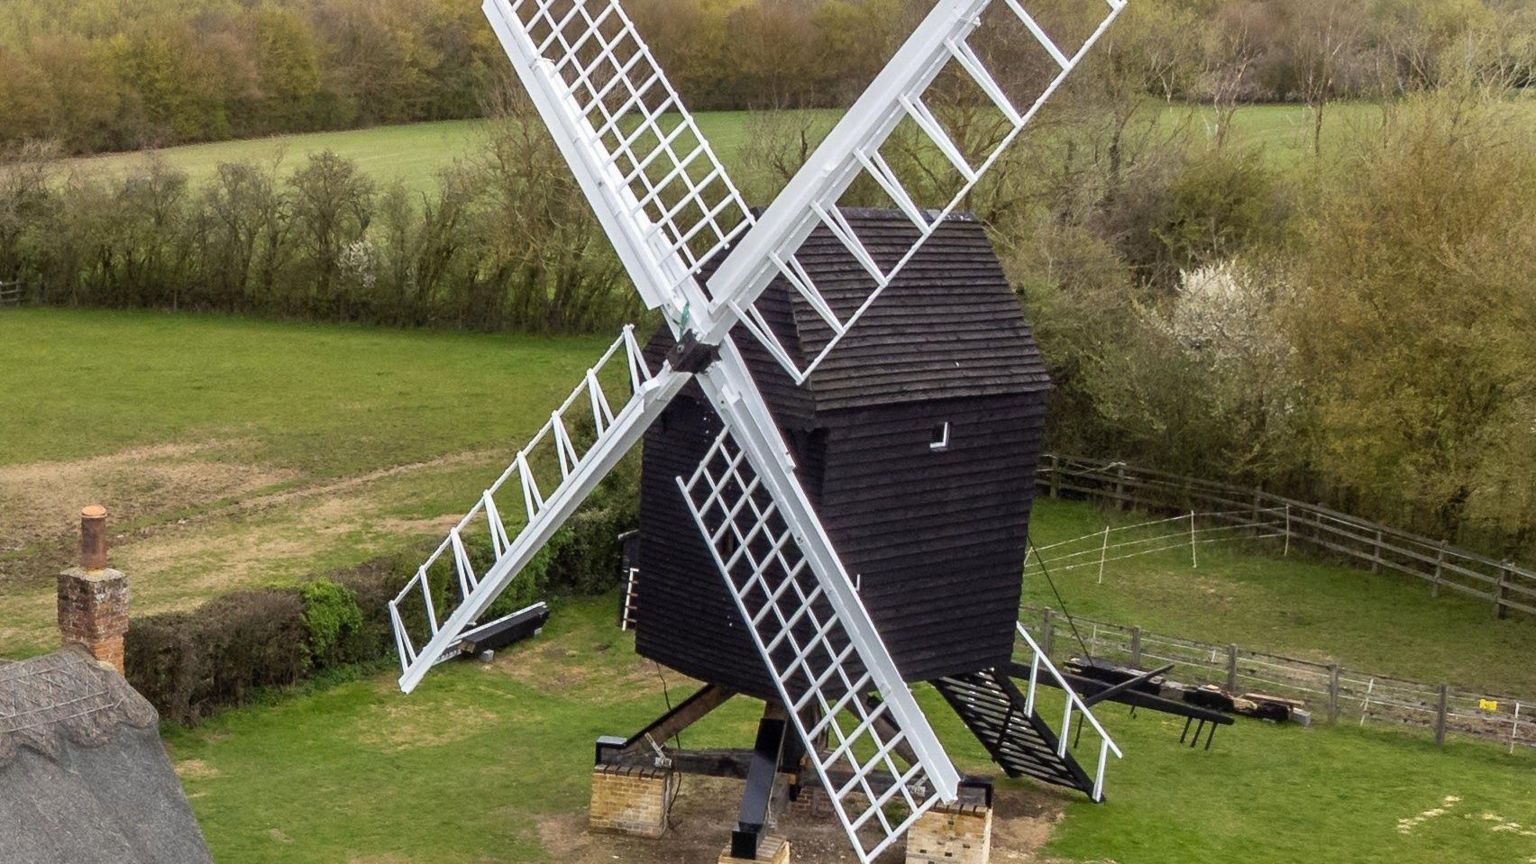 Windmill